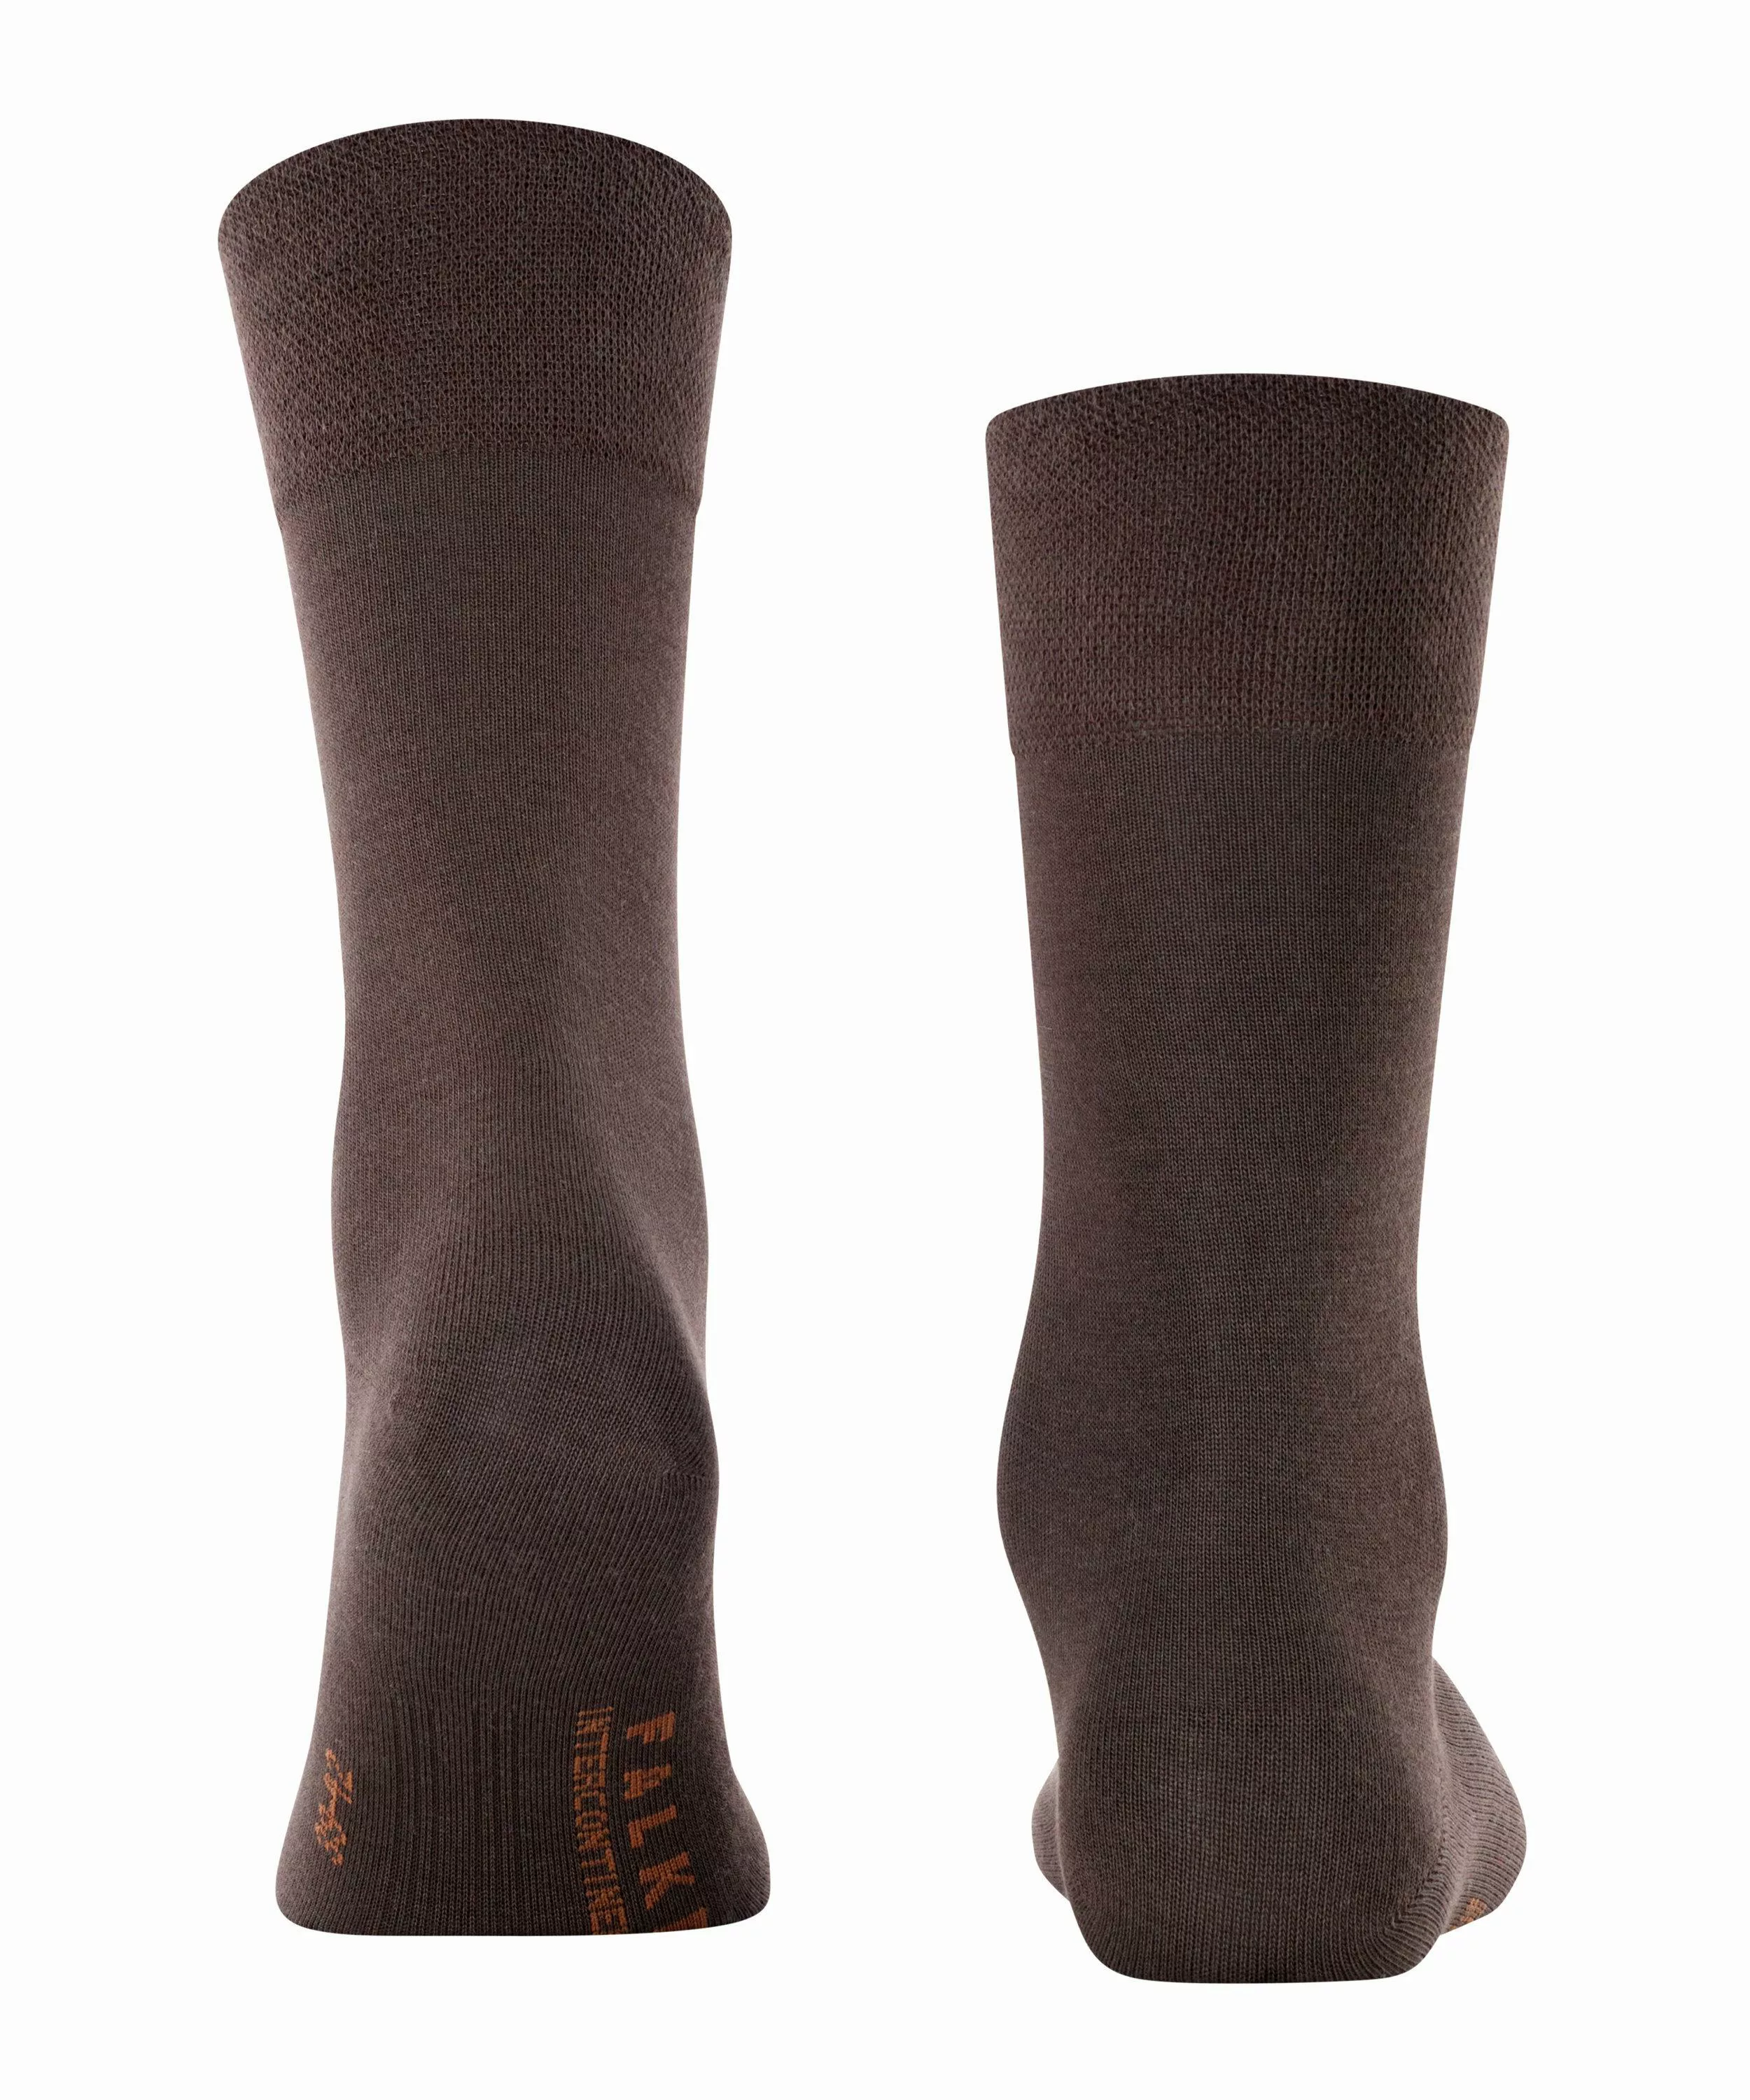 FALKE Sensitive Intercontinental Herren Socken, 43-46, Braun, Uni, 13240-59 günstig online kaufen